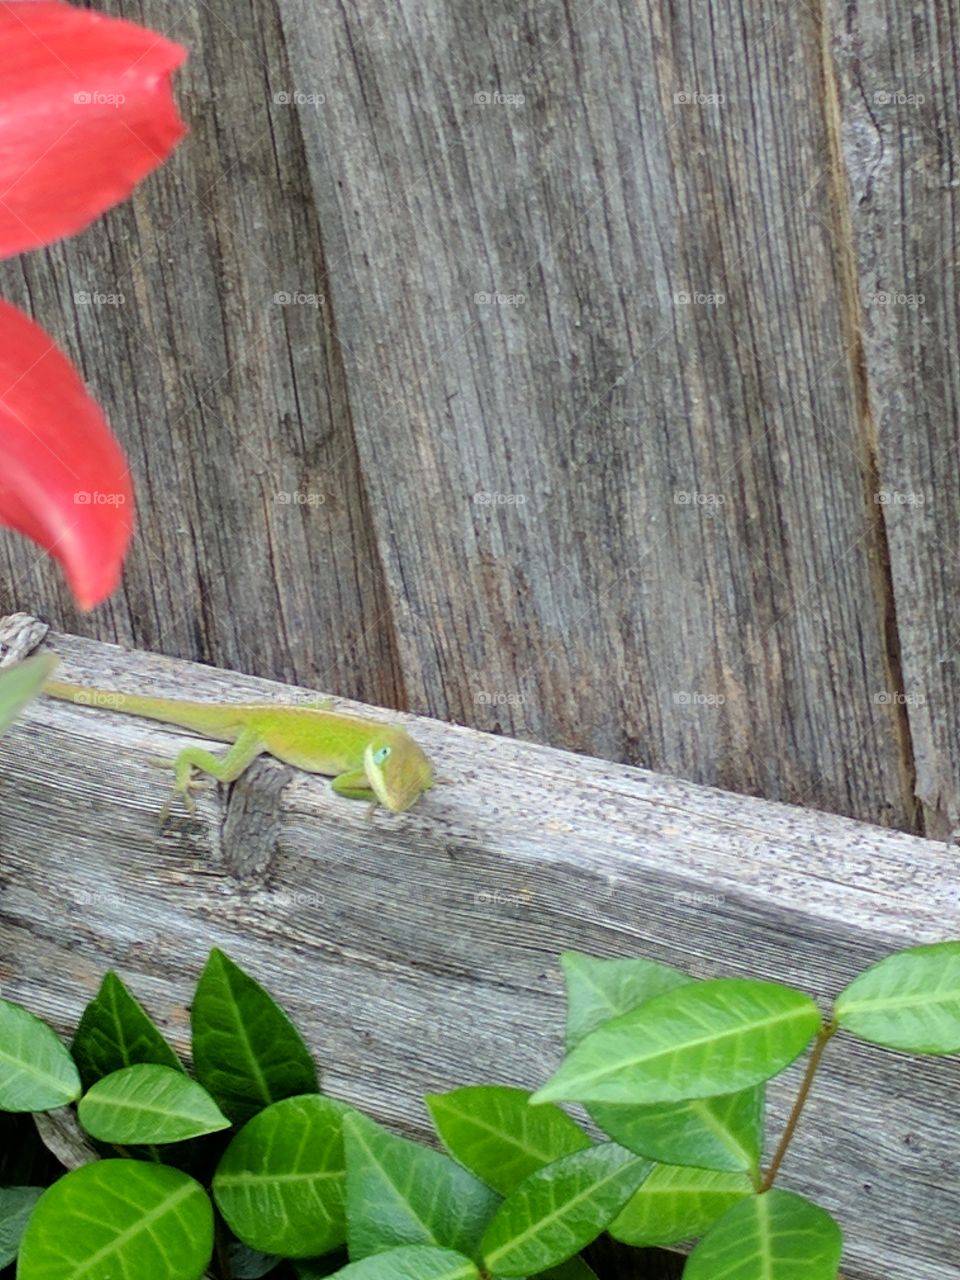 curious green lizard